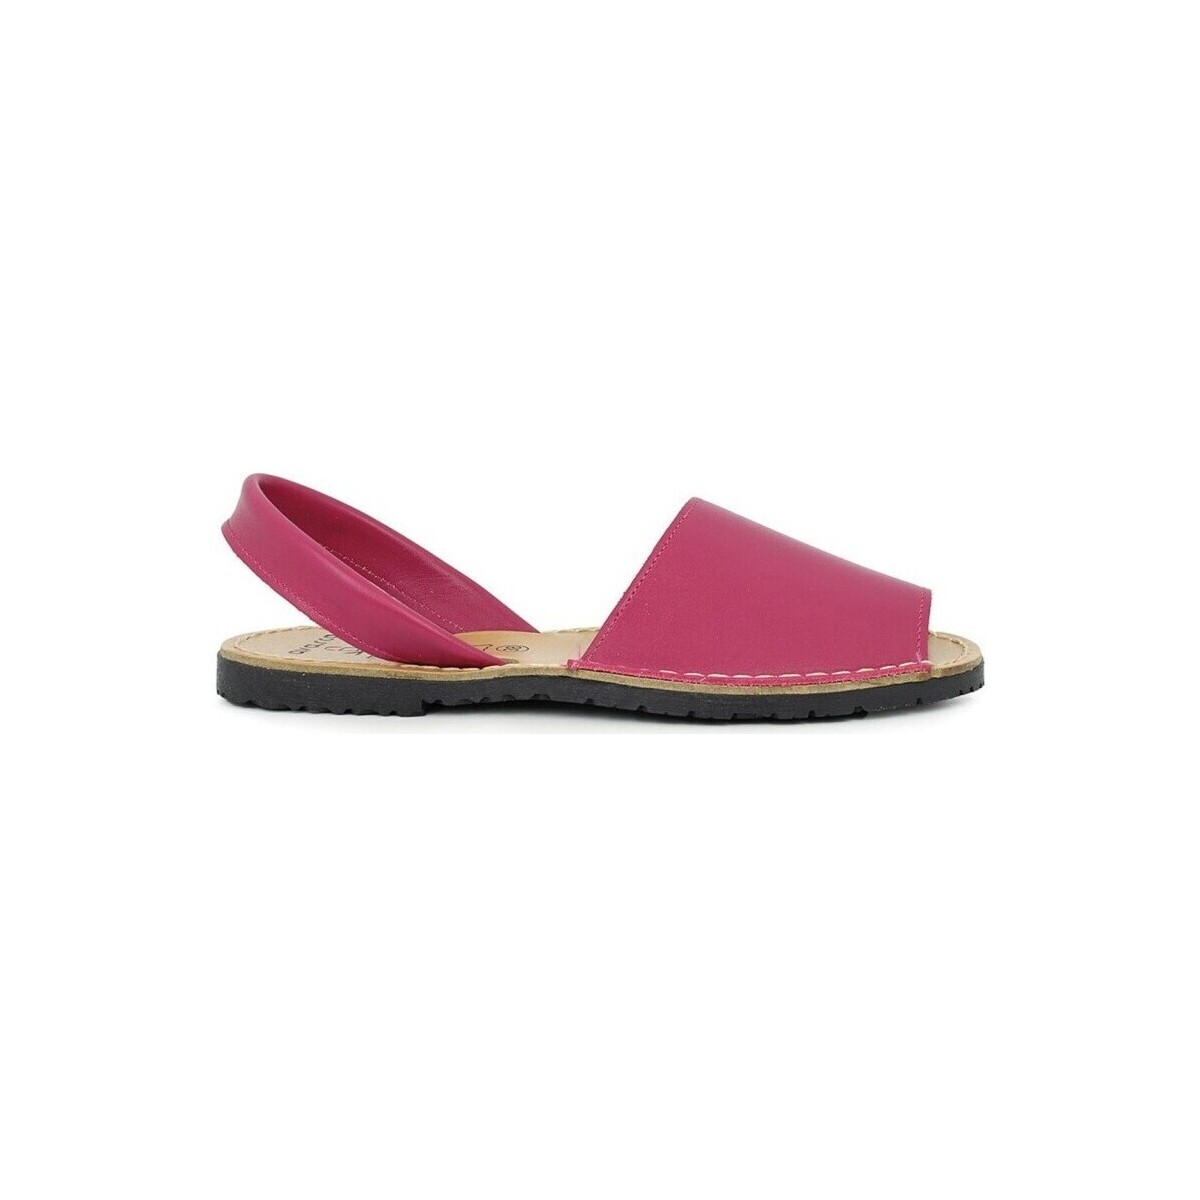 Sapatos Sandálias Colores 11948-27 Rosa